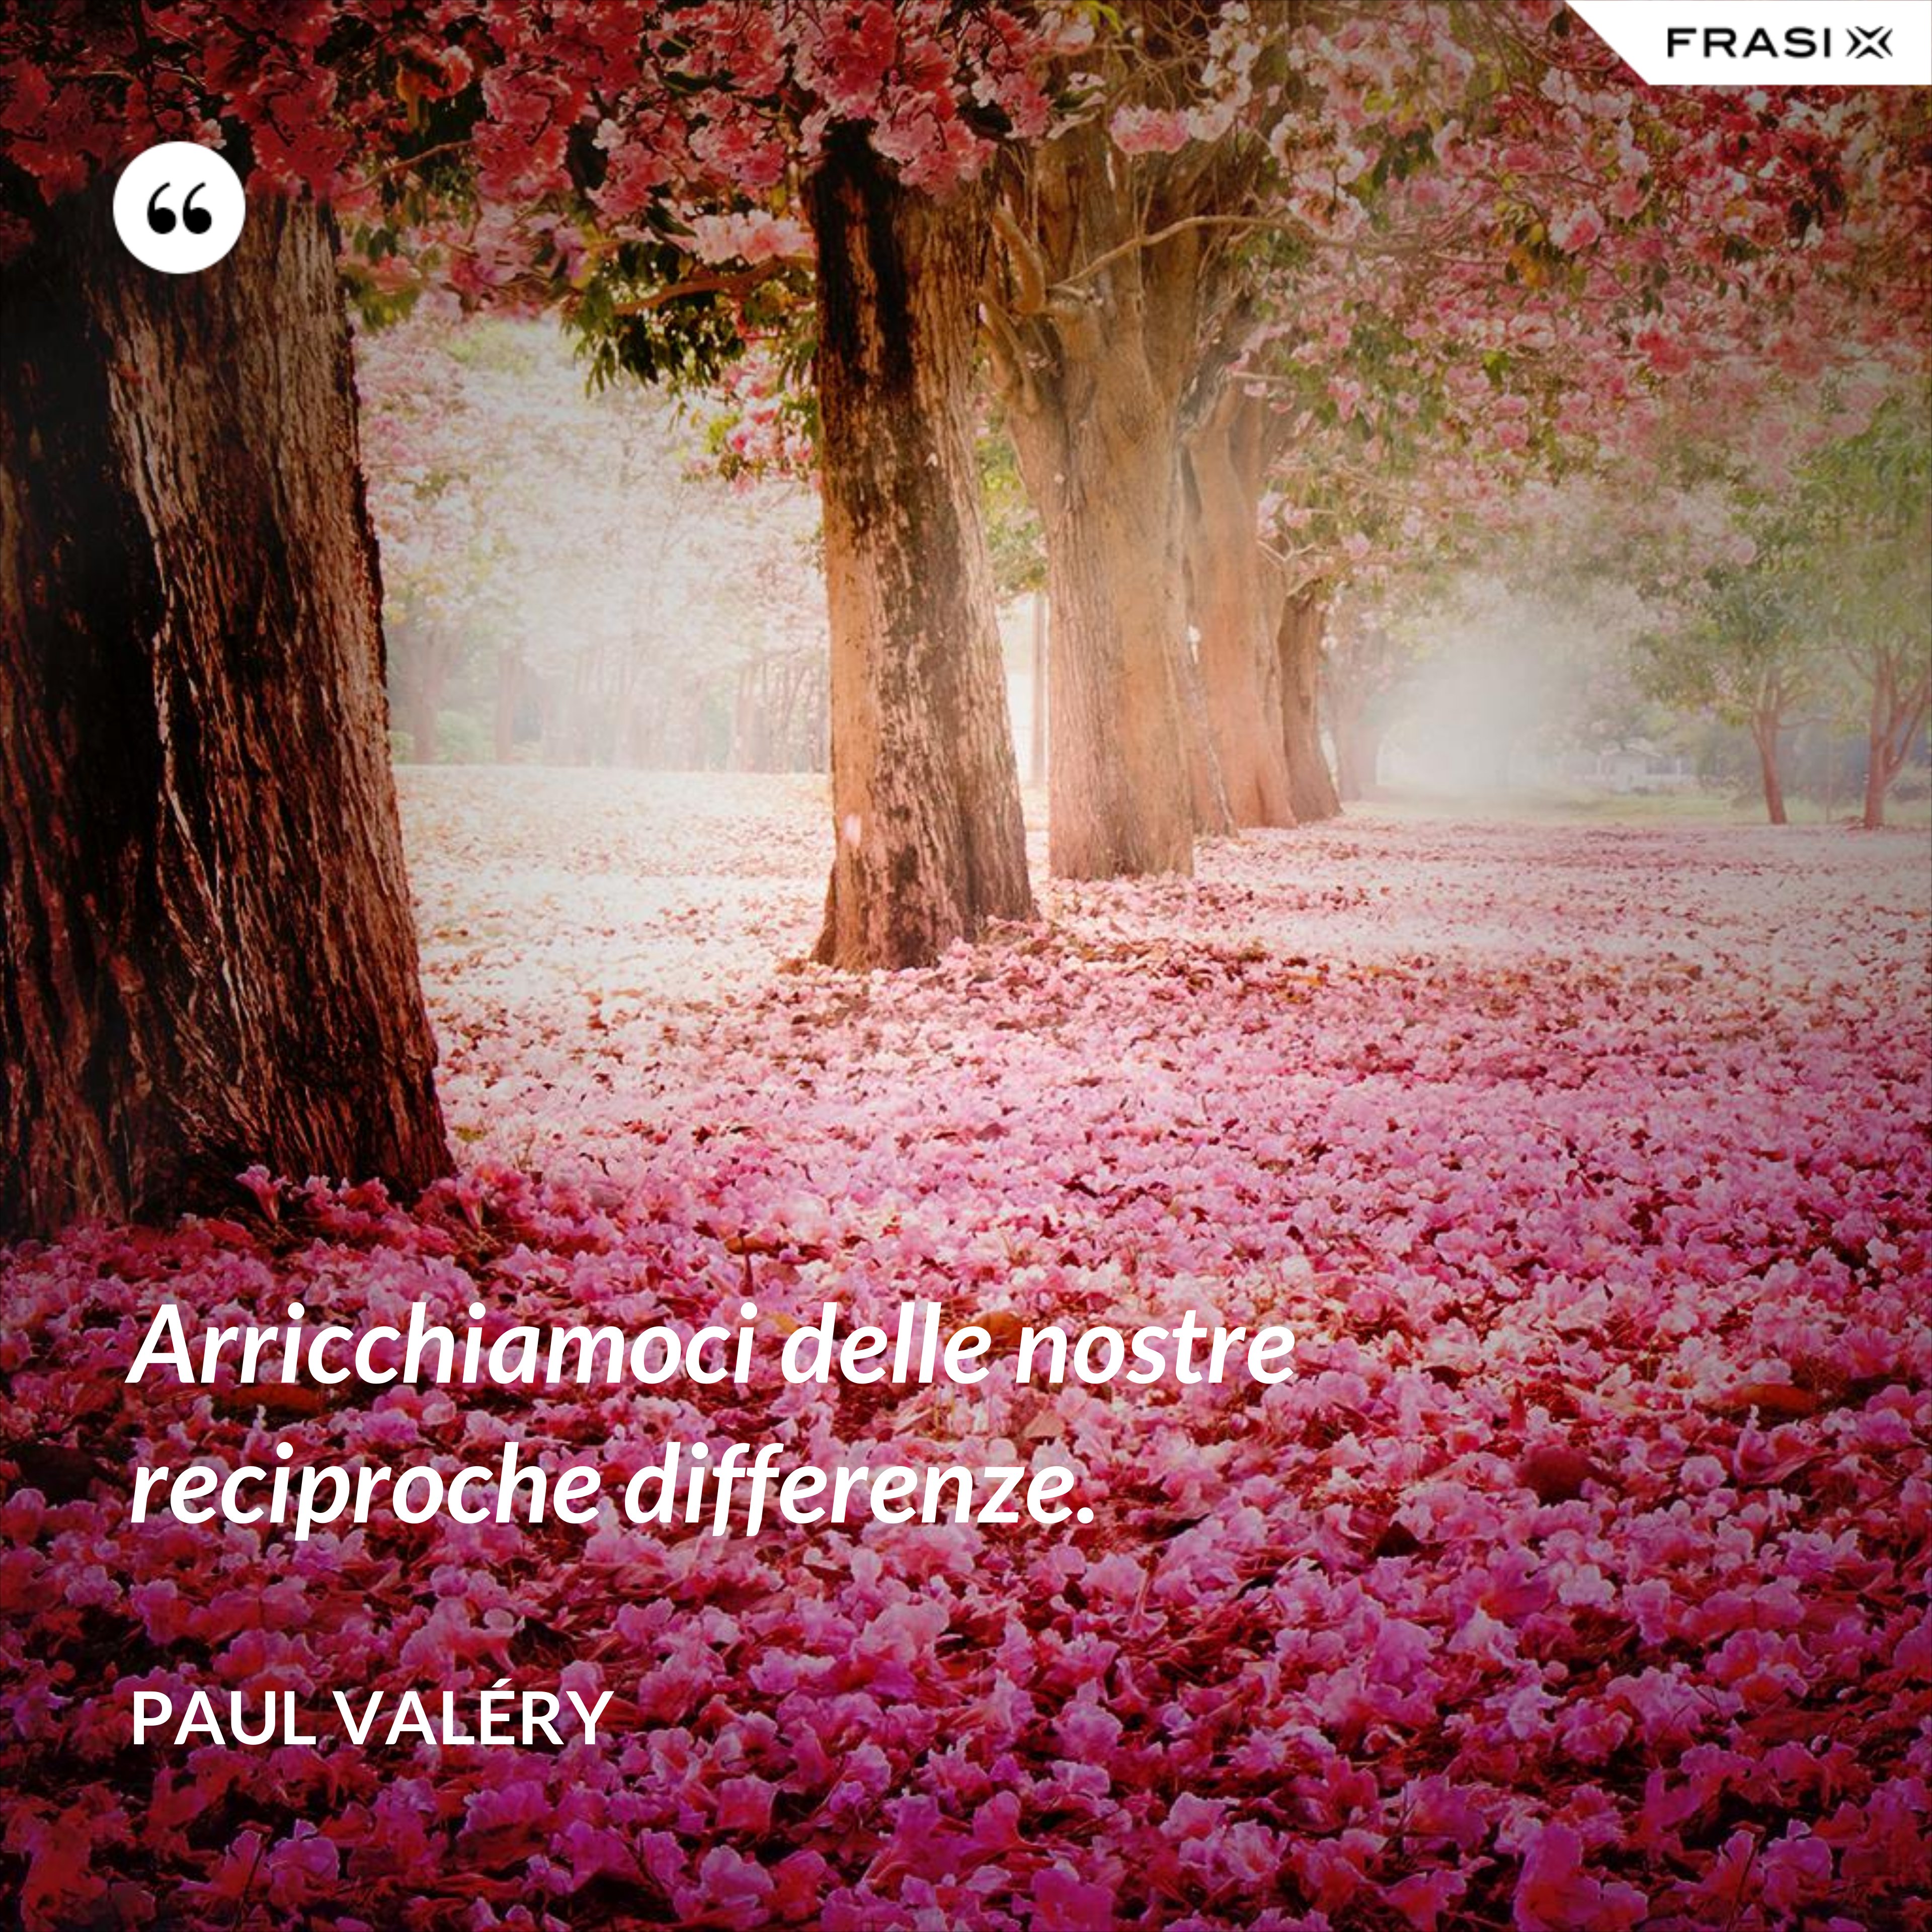 Arricchiamoci delle nostre reciproche differenze. - Paul Valéry